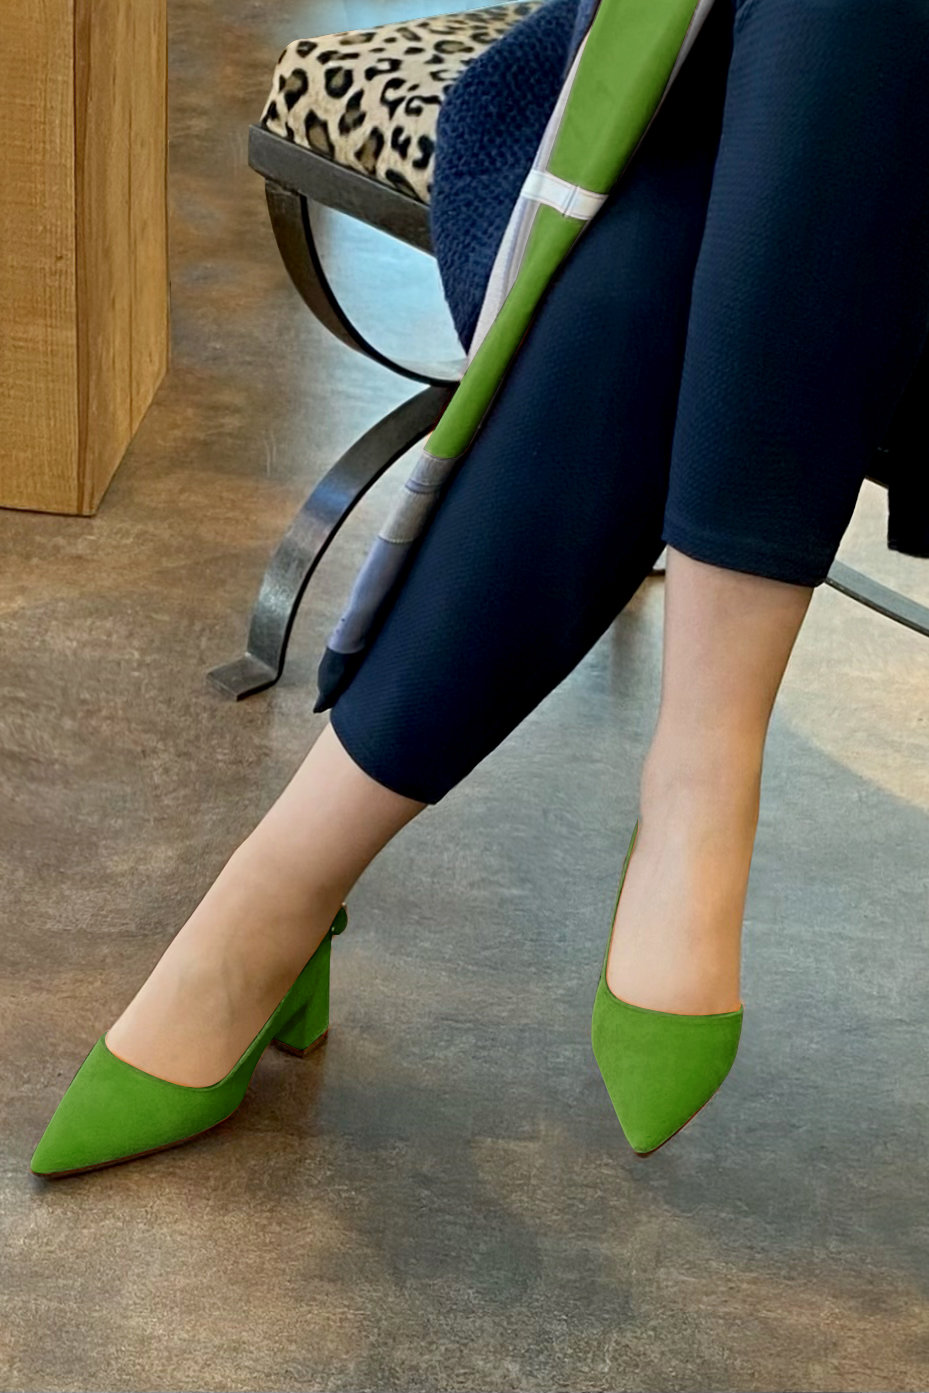 Chaussure femme à brides :  couleur vert anis. Bout pointu. Talon mi-haut évasé. Vue porté - Florence KOOIJMAN